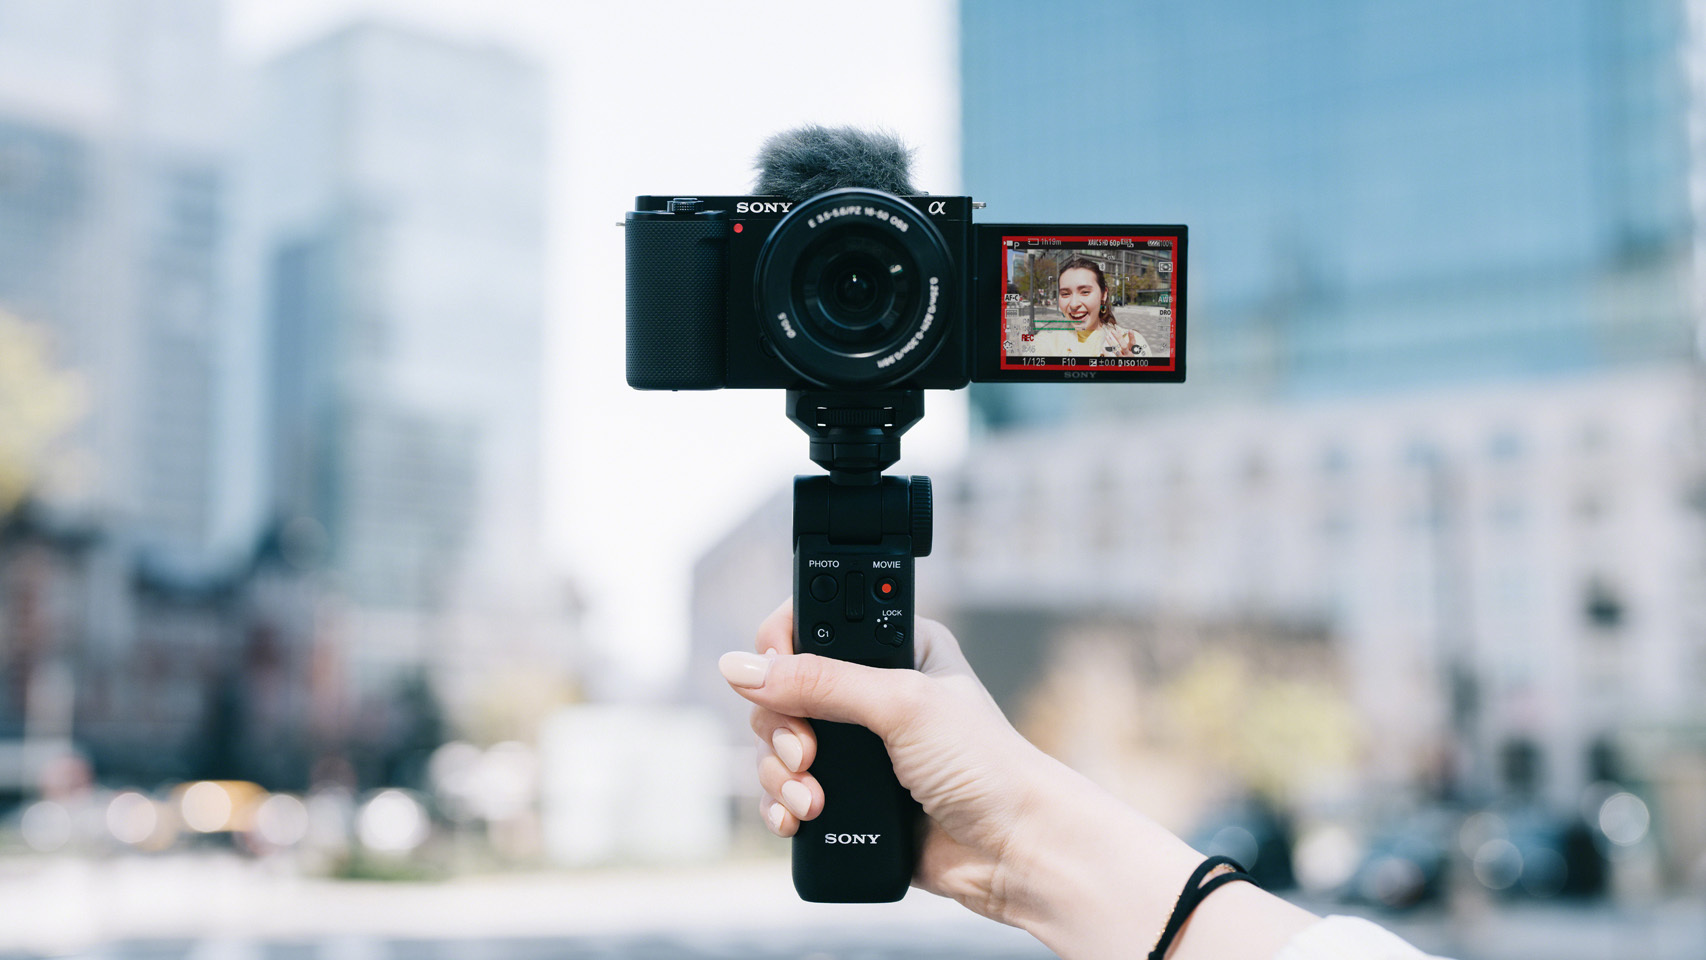 Sony presenta ZV-E10: La nueva cámara vlog de lente intercambiable para  vloggers y creadores de contenido - Revista Gadgets